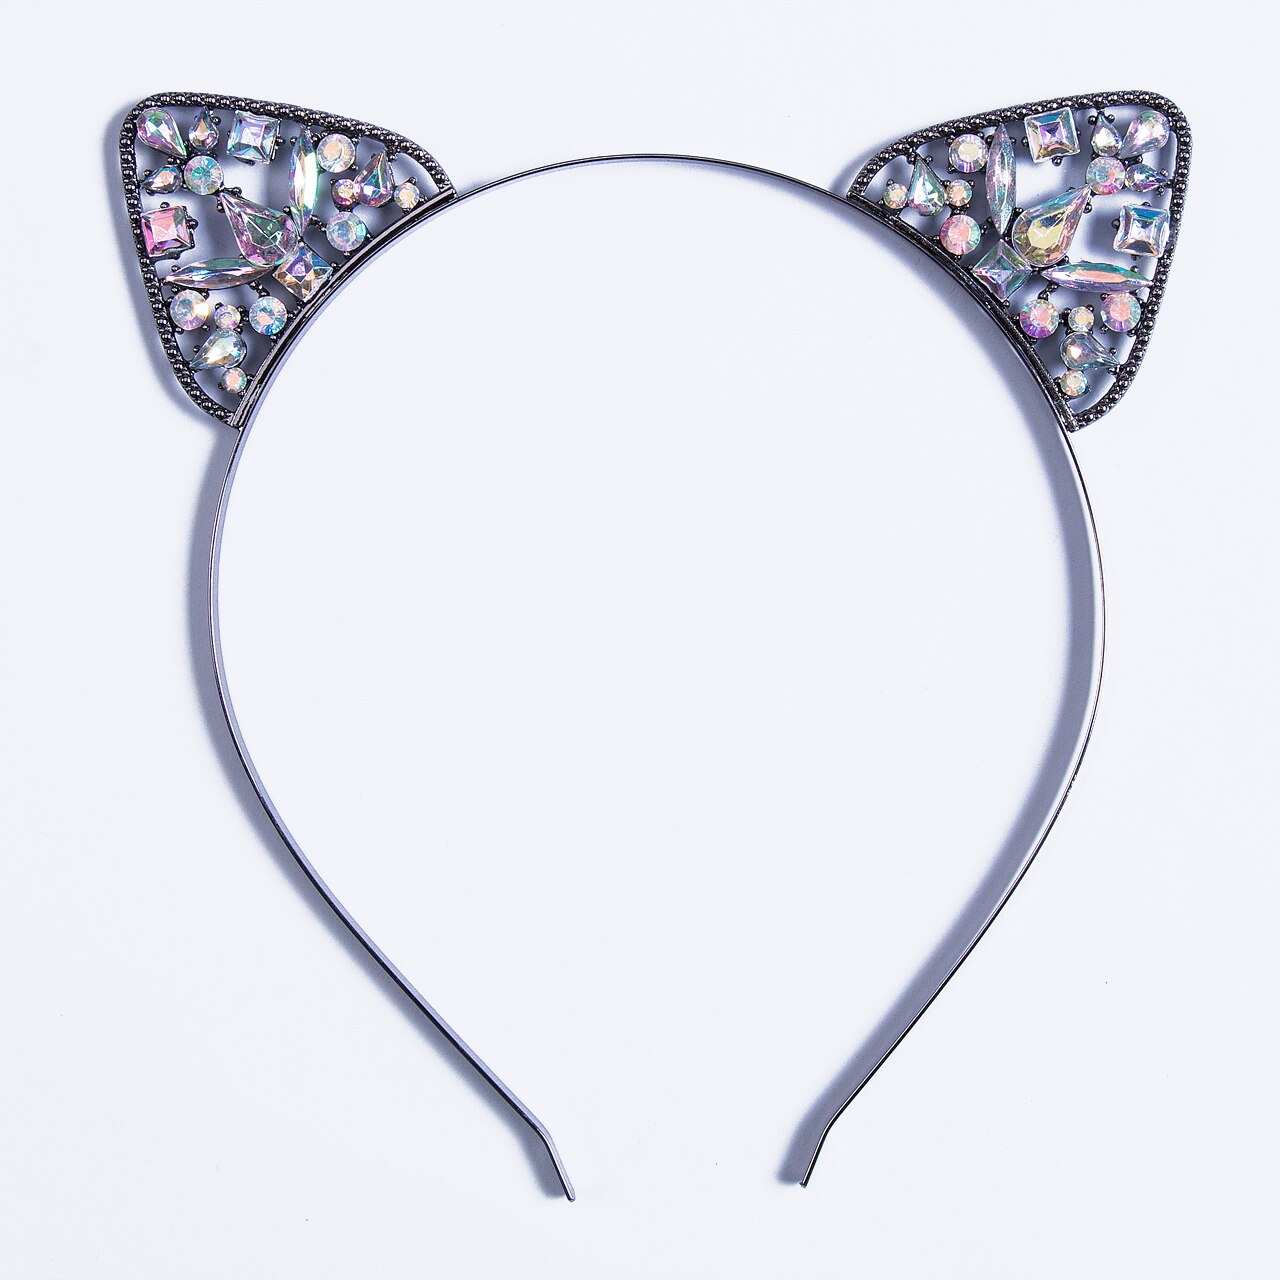 Nyeste piger børn kat øre alice band pandebånd metal rhinestone hårbånd kostume cosplay: Sort